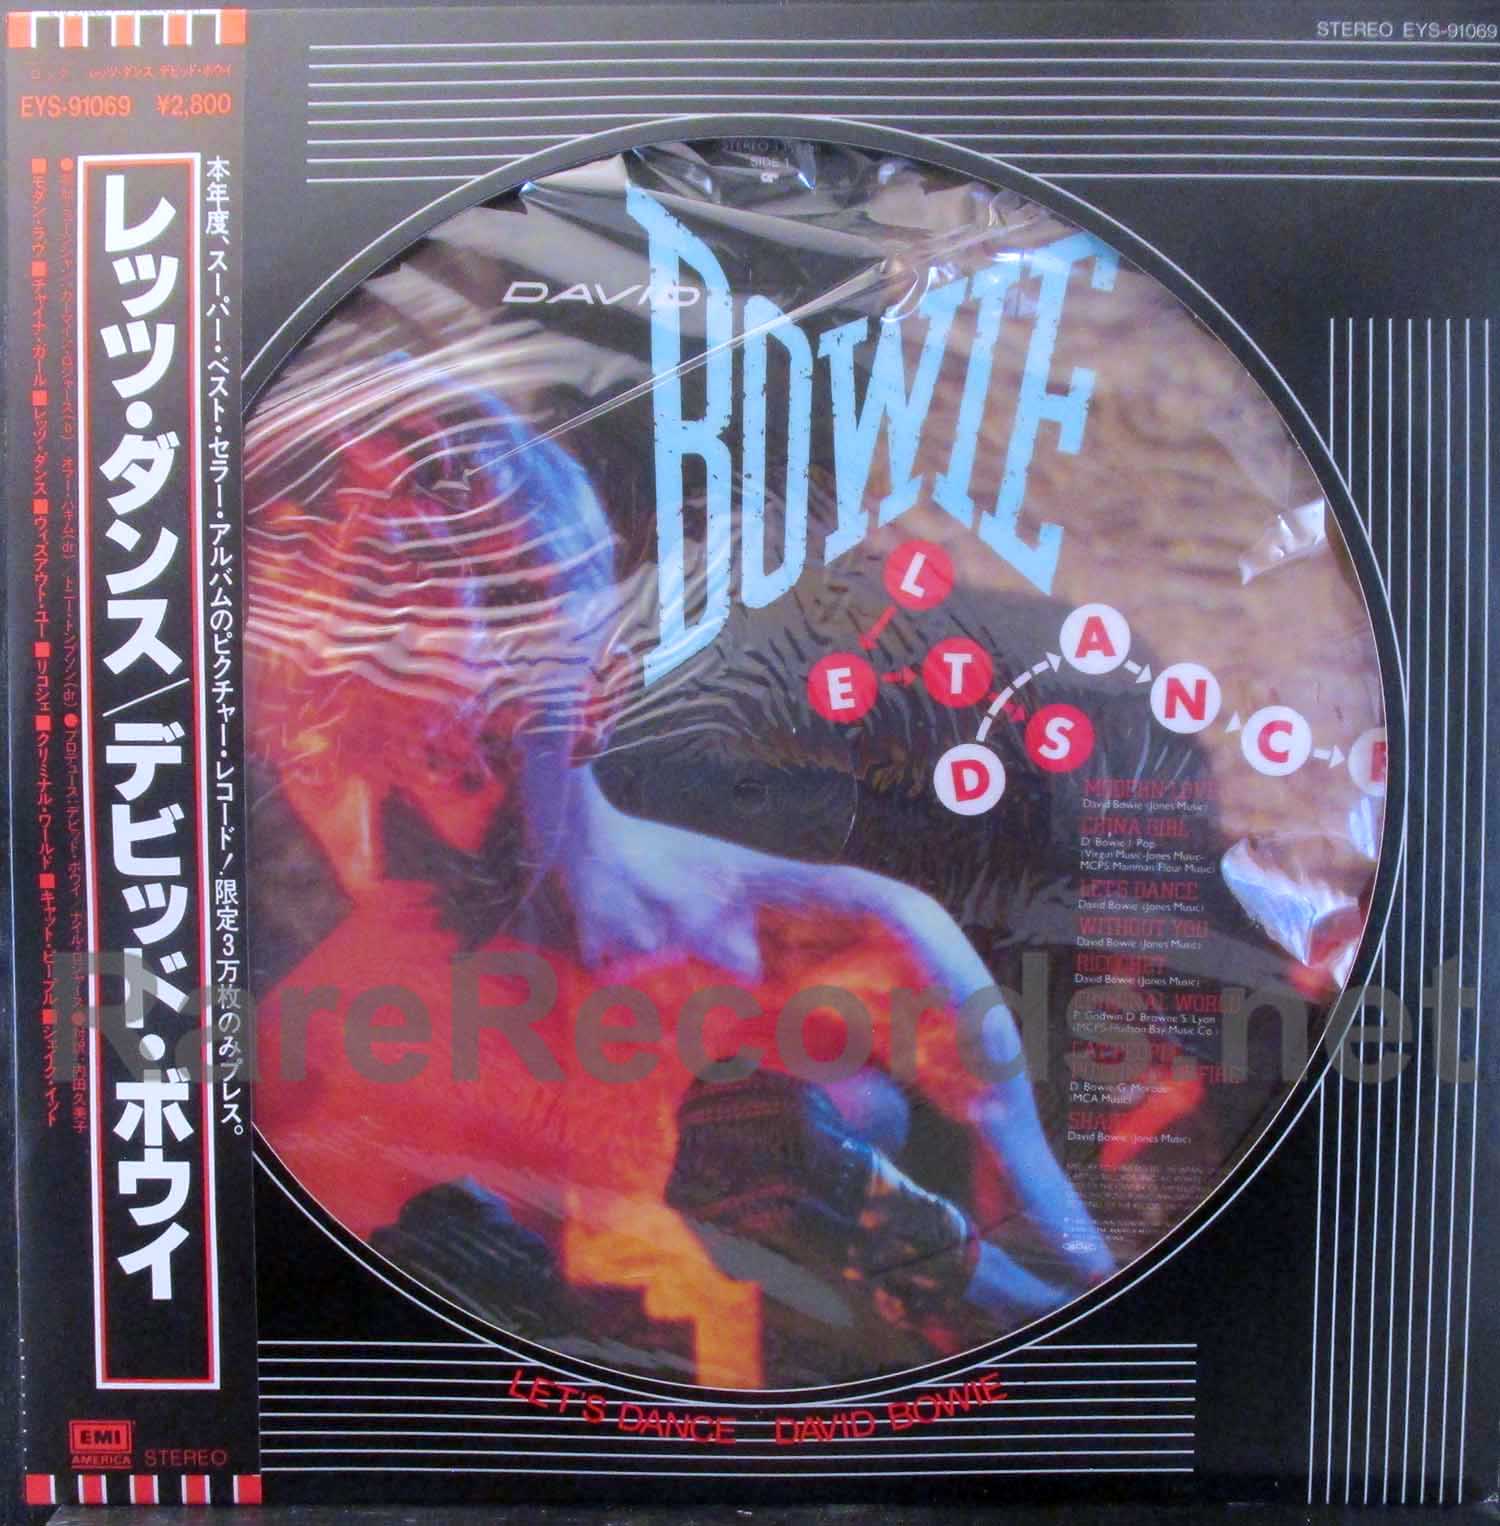 David Bowie - Let's Dance Japan picture disc LP with obi